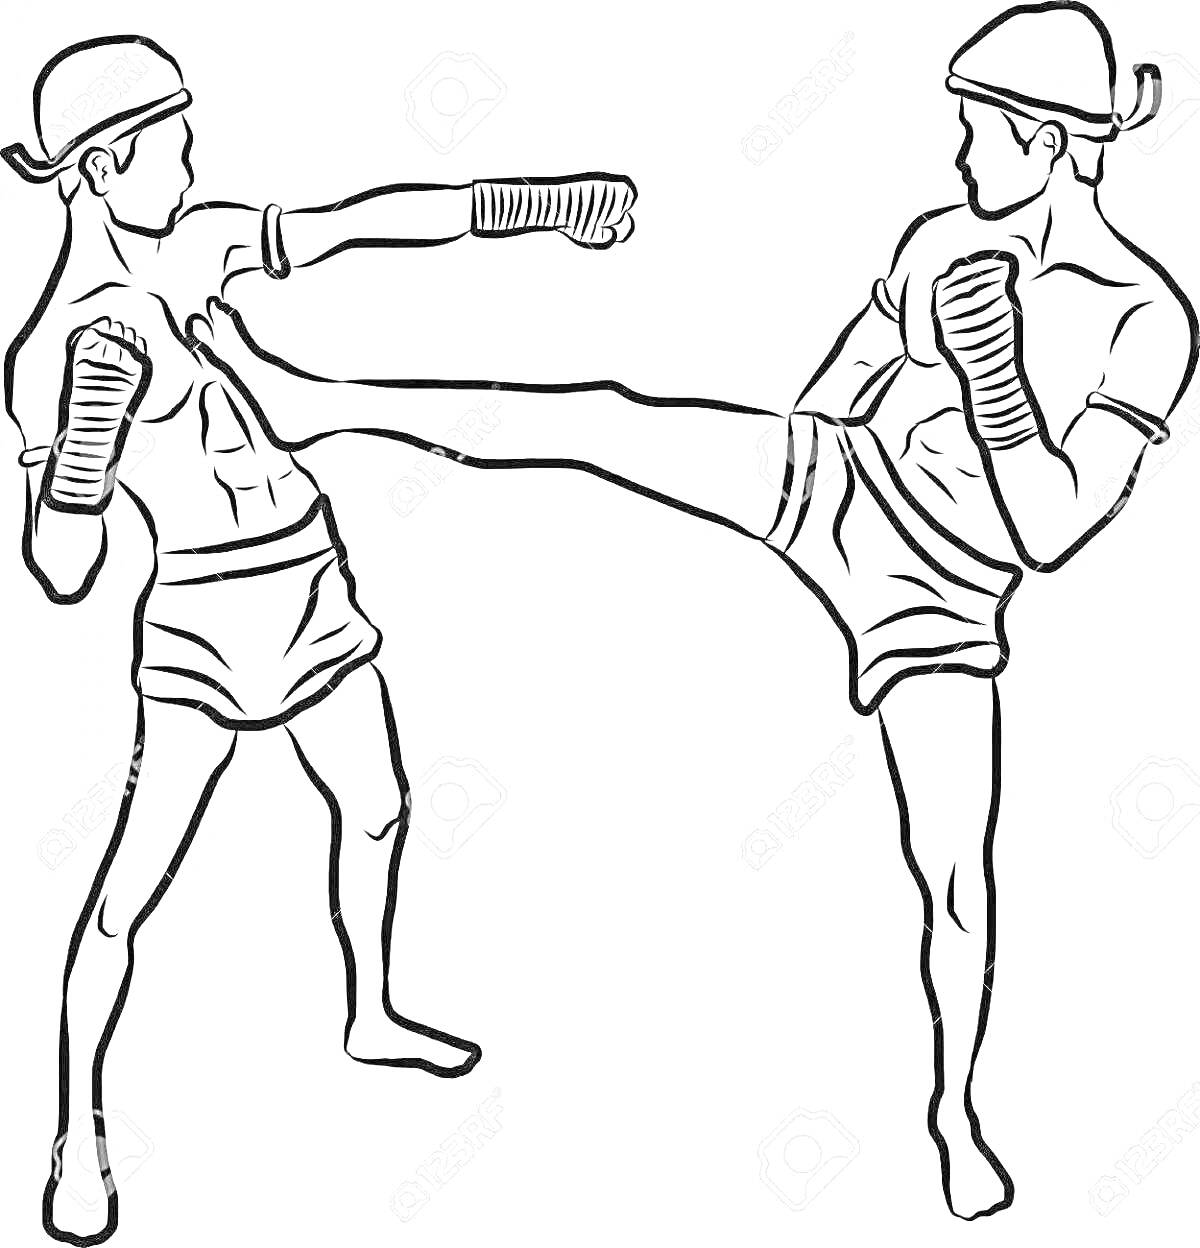 Раскраска Поединок по кикбоксингу — удары руками и ногами от двух боксёров в шлемах и перчатках